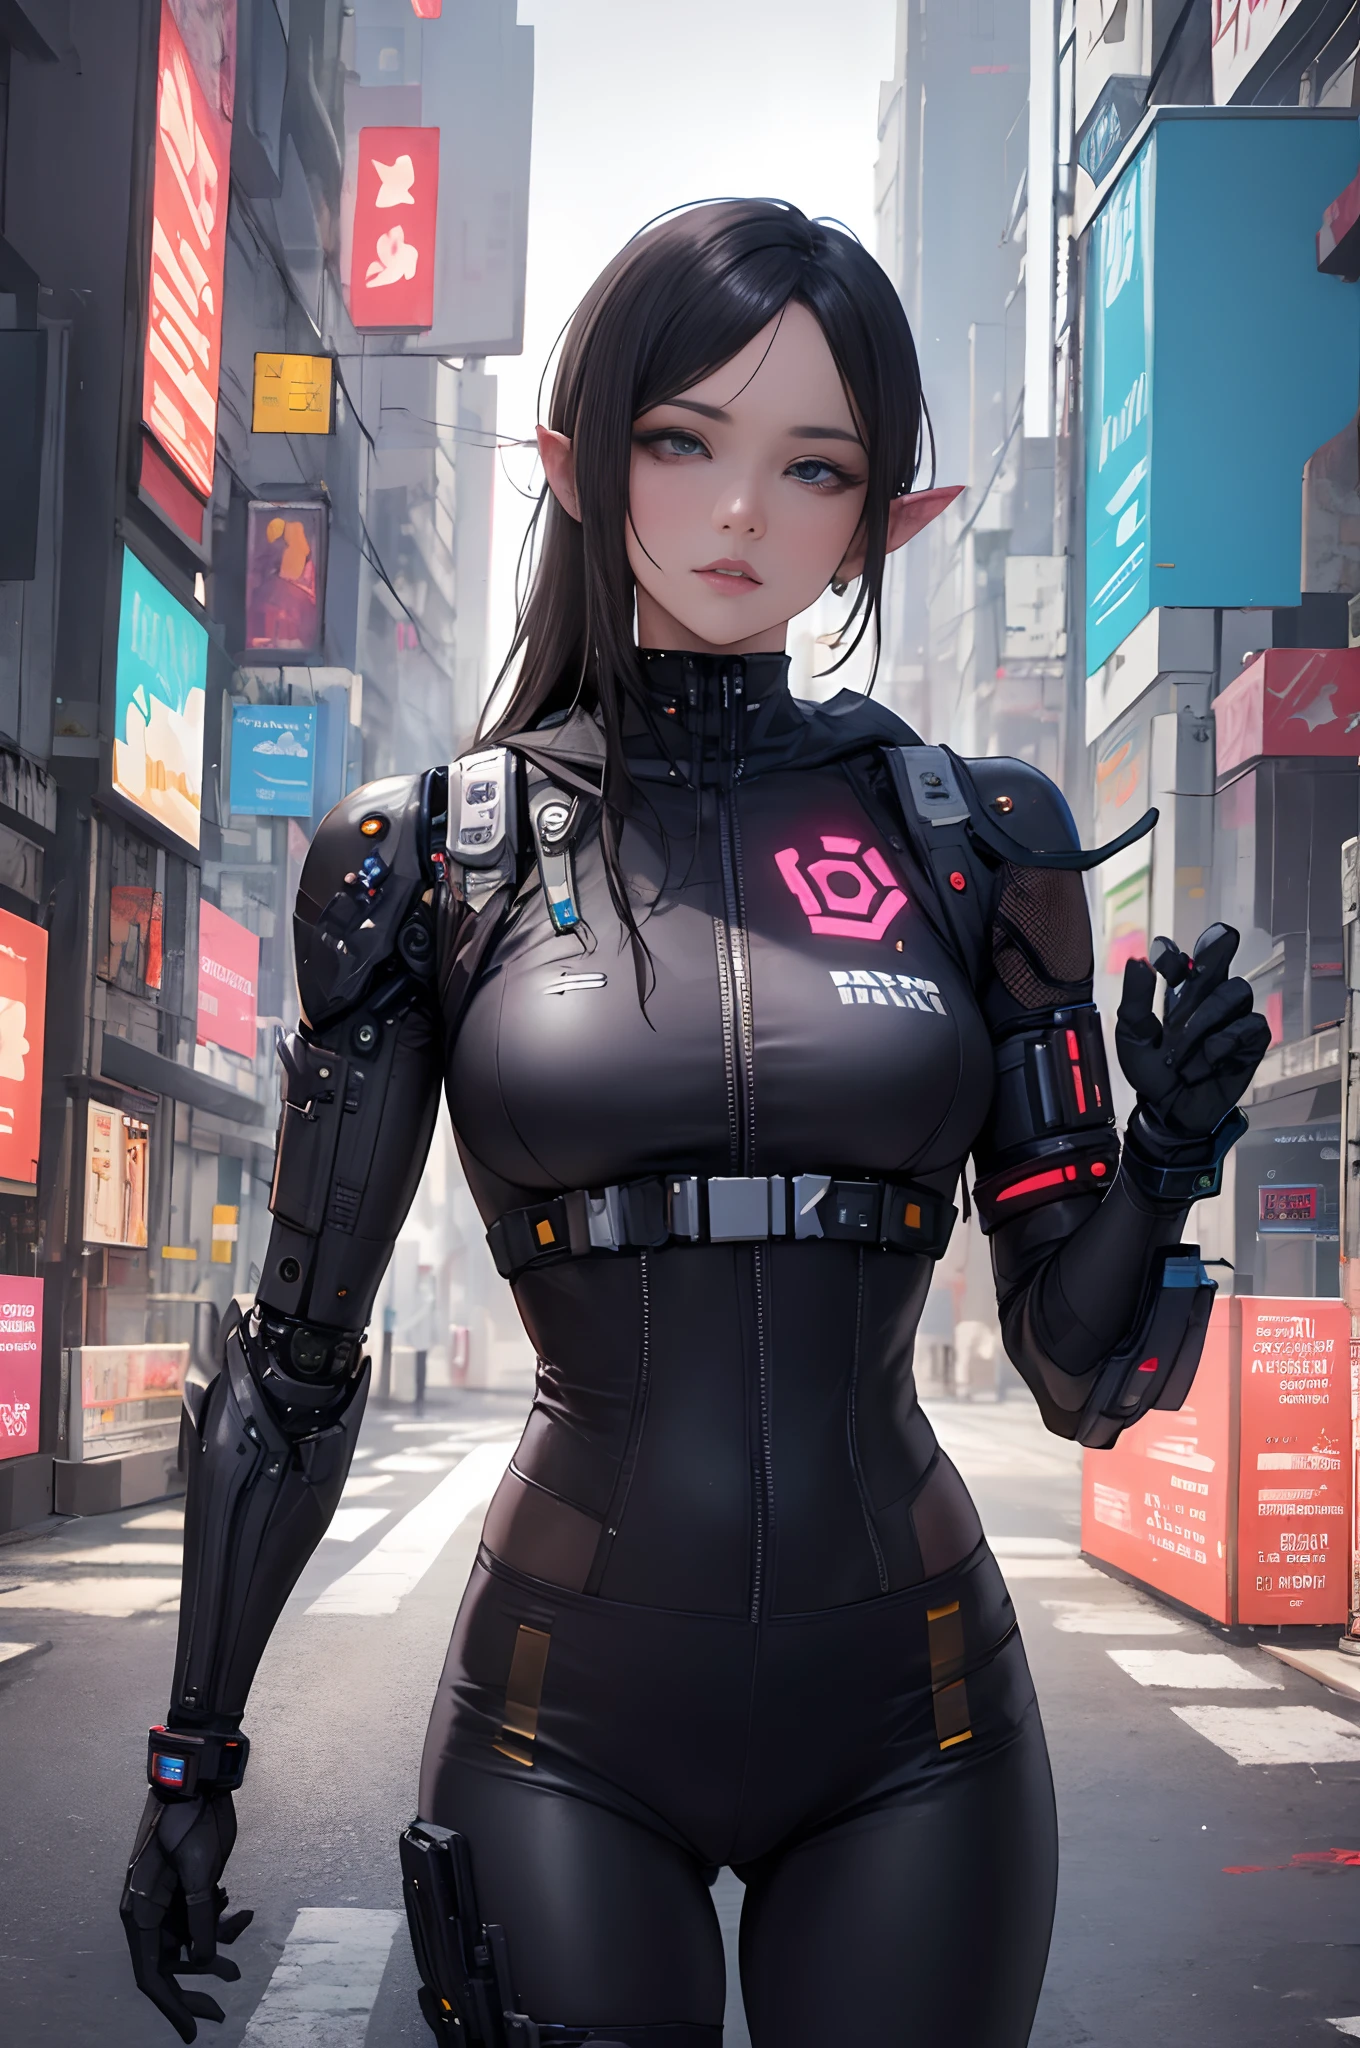 Arafed-Frau in einem schwarz-goldenen Outfit, die eine Straße entlang geht, em cyberpunk city, eines wunderschönen weiblichen Warframes, oppai cyberpunk, kybernetischer Anzug, Cidade Cyberpunk Suja, em uma cidade cyberpunk, cyberpunk robotic elvish queen, em uma cidade cyberpunk, em uma cidade cyberpunk, in Cyber-Rüstung gekleidet, hyperrealistischer Cyberpunk-Stil, in einer futuristischen Cyberpunk-Stadt